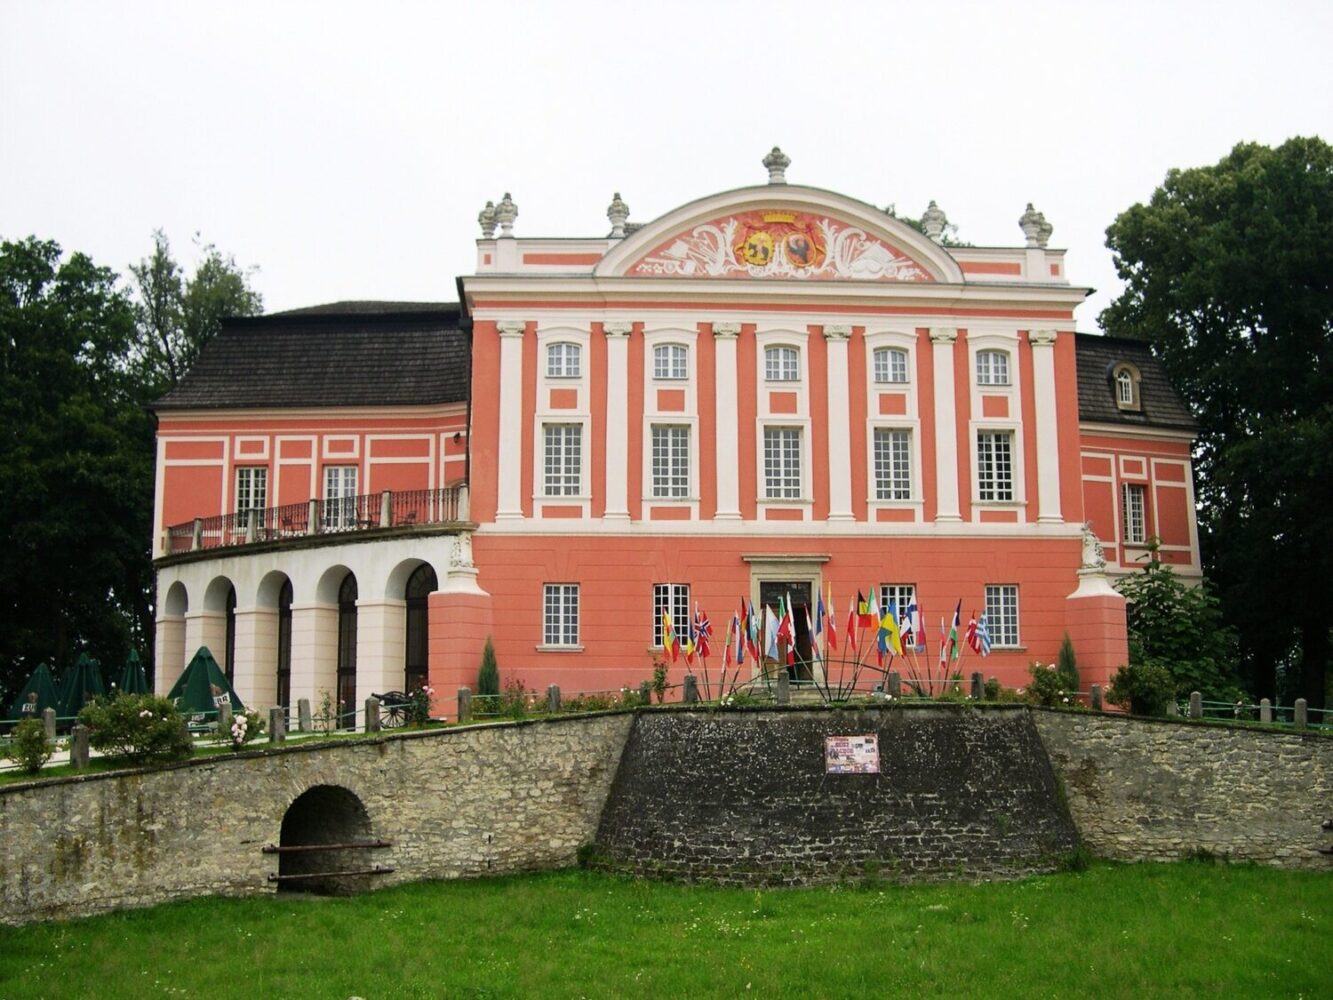 Kurozwęki Palace